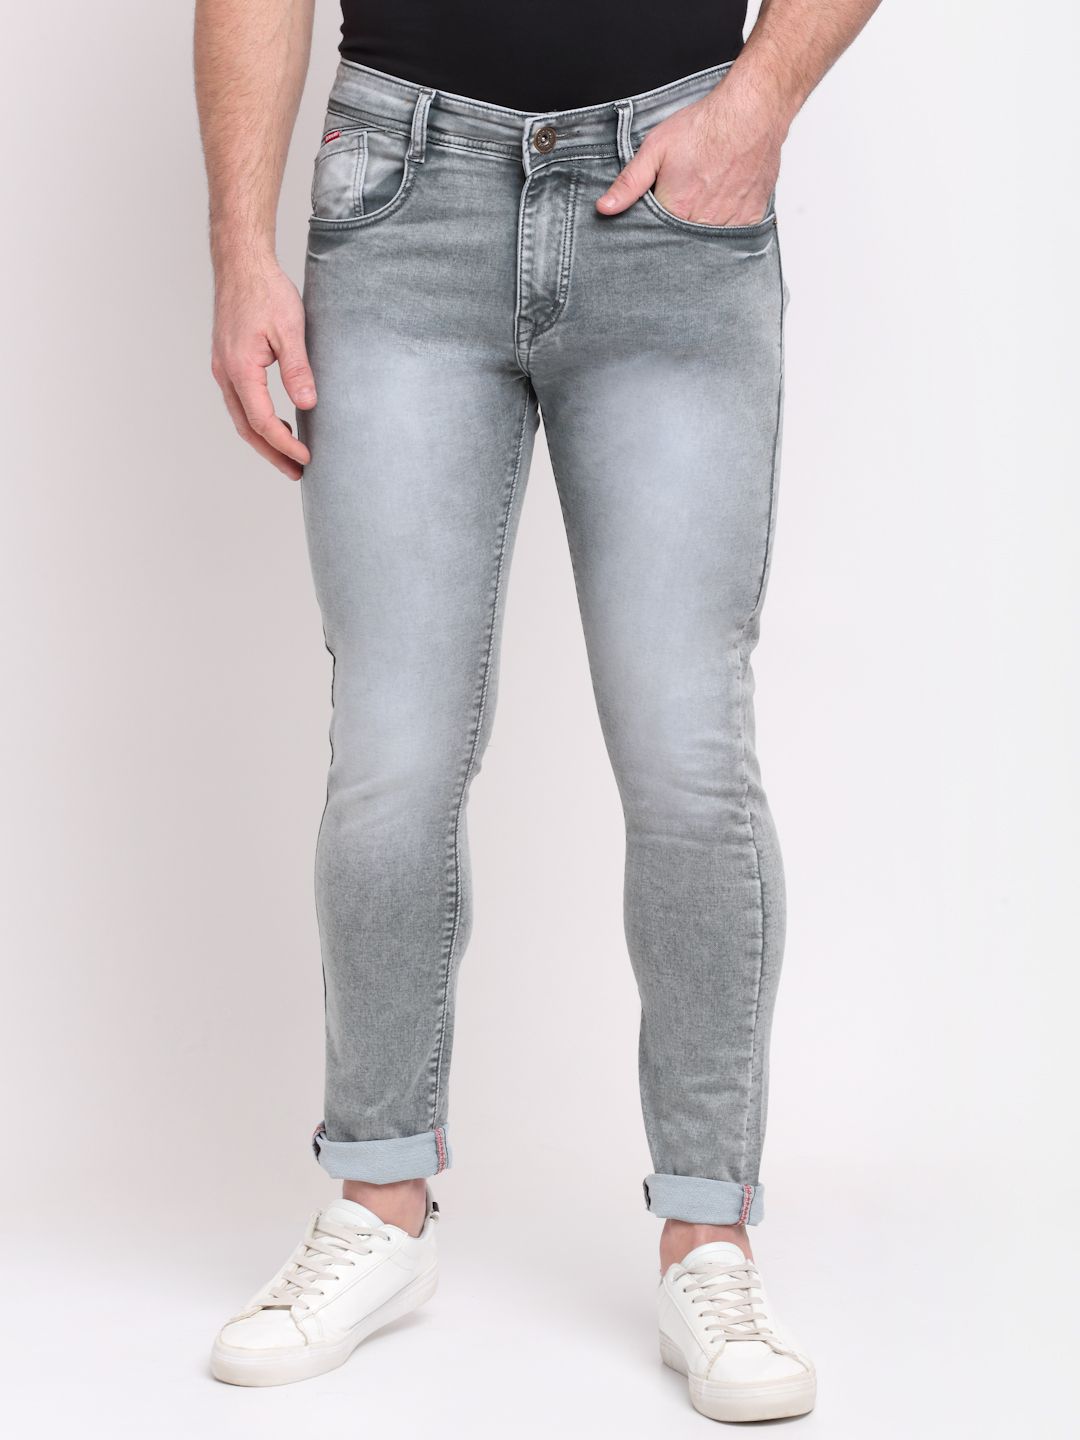     			Rodamo Slim Fit Basic Men's Jeans - Green ( Pack of 1 )